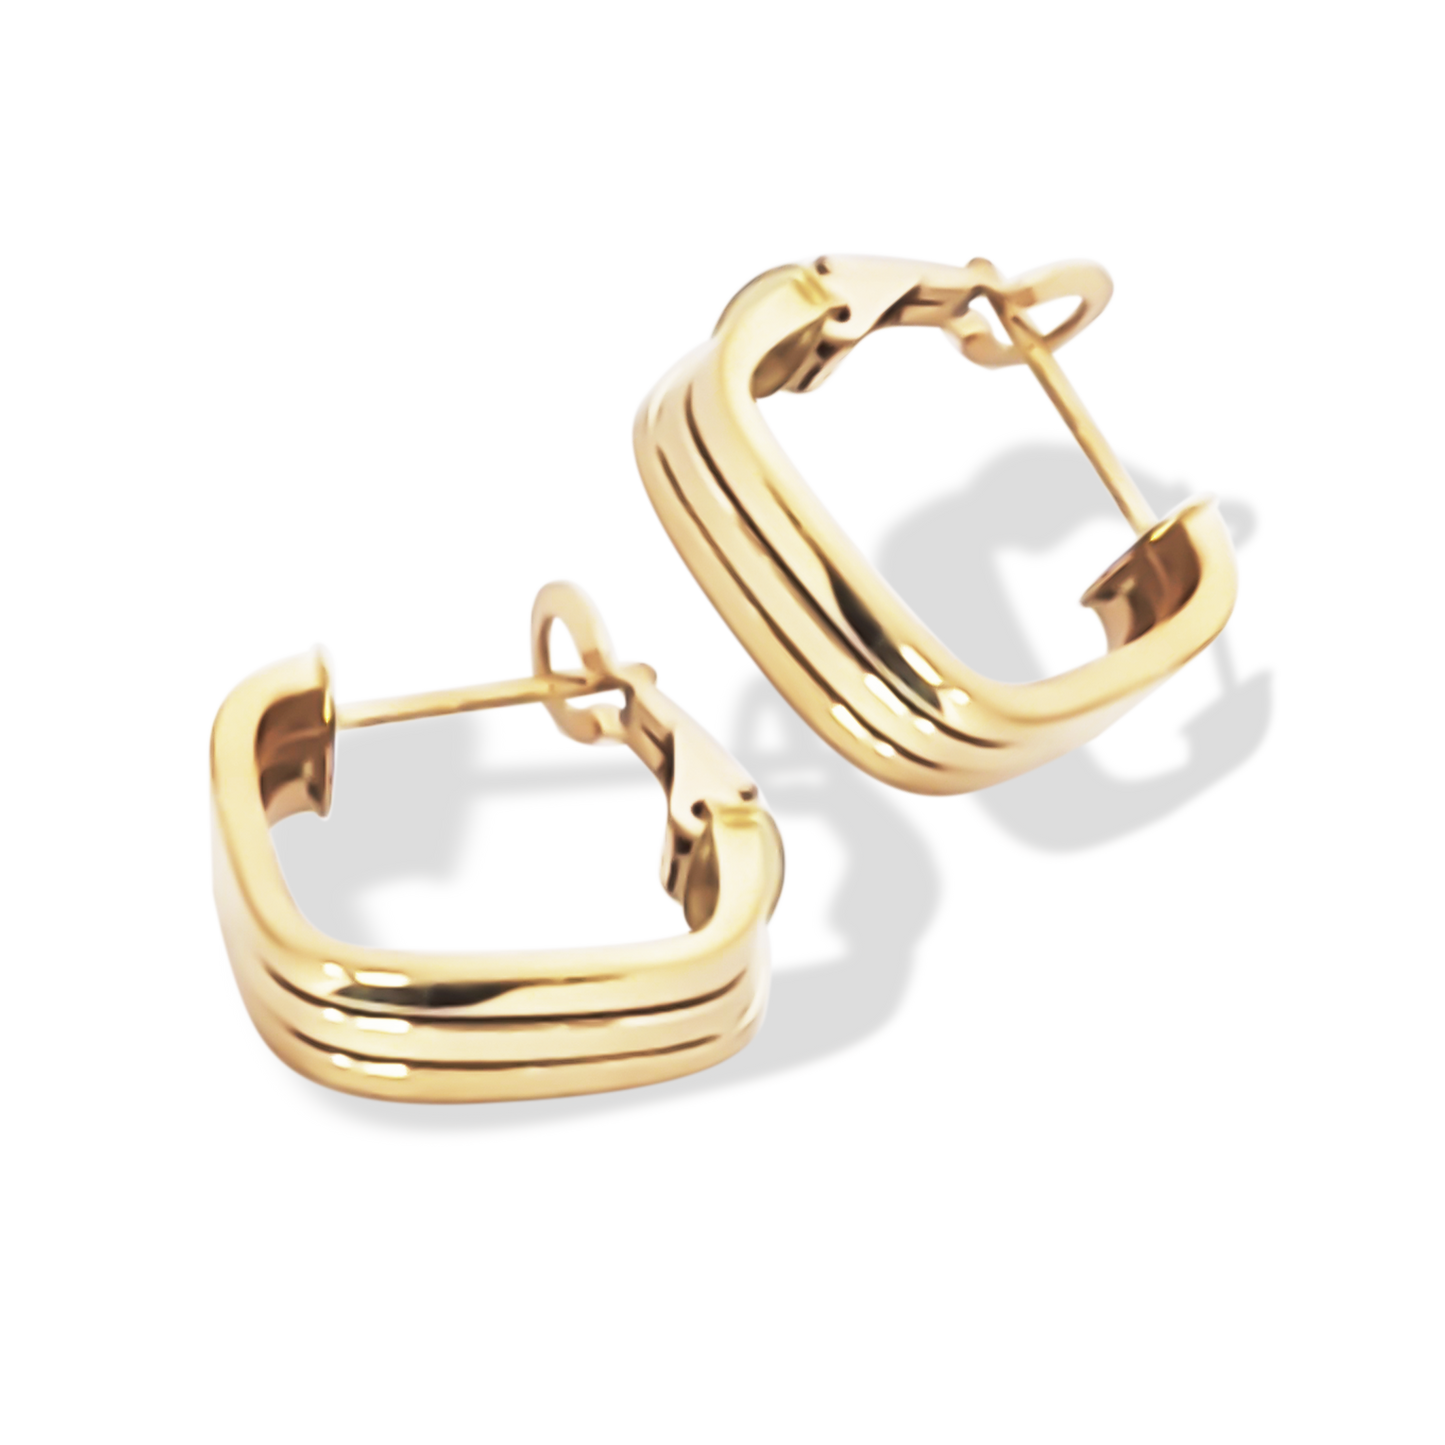 25mm Stroke Flat Hoop Earrings in 9ct Yellow Gold